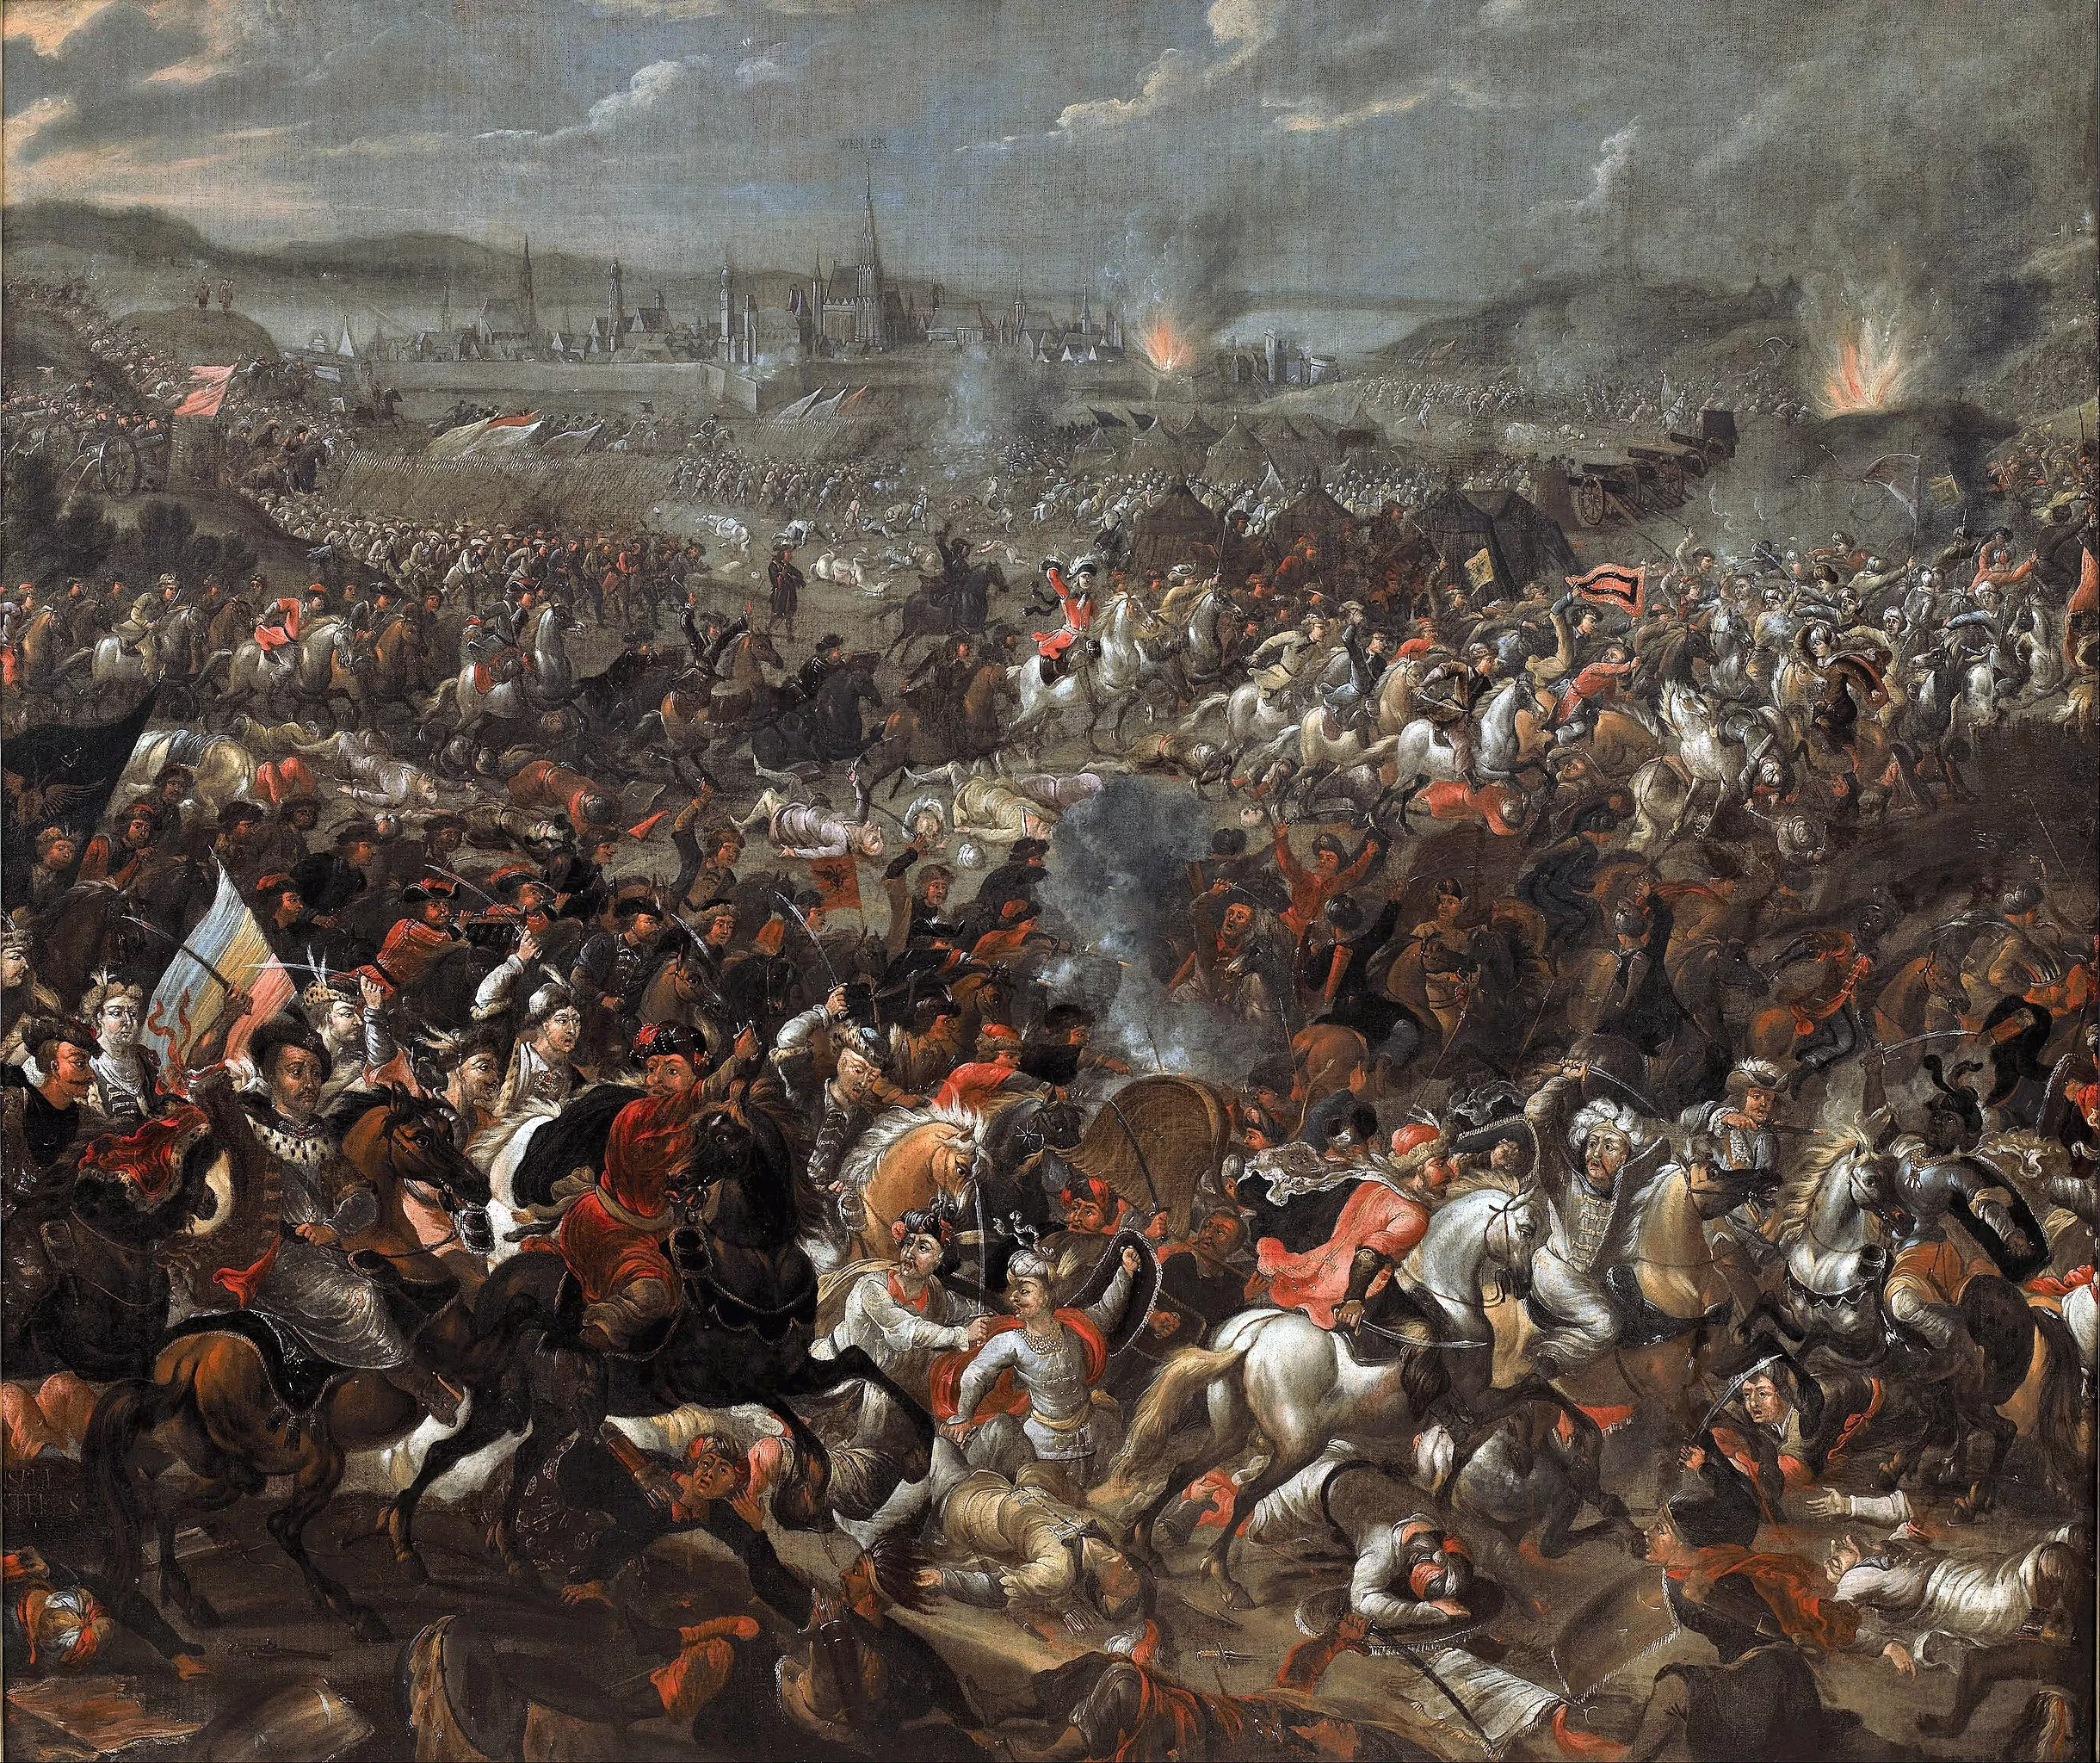 La Batalla de Viena